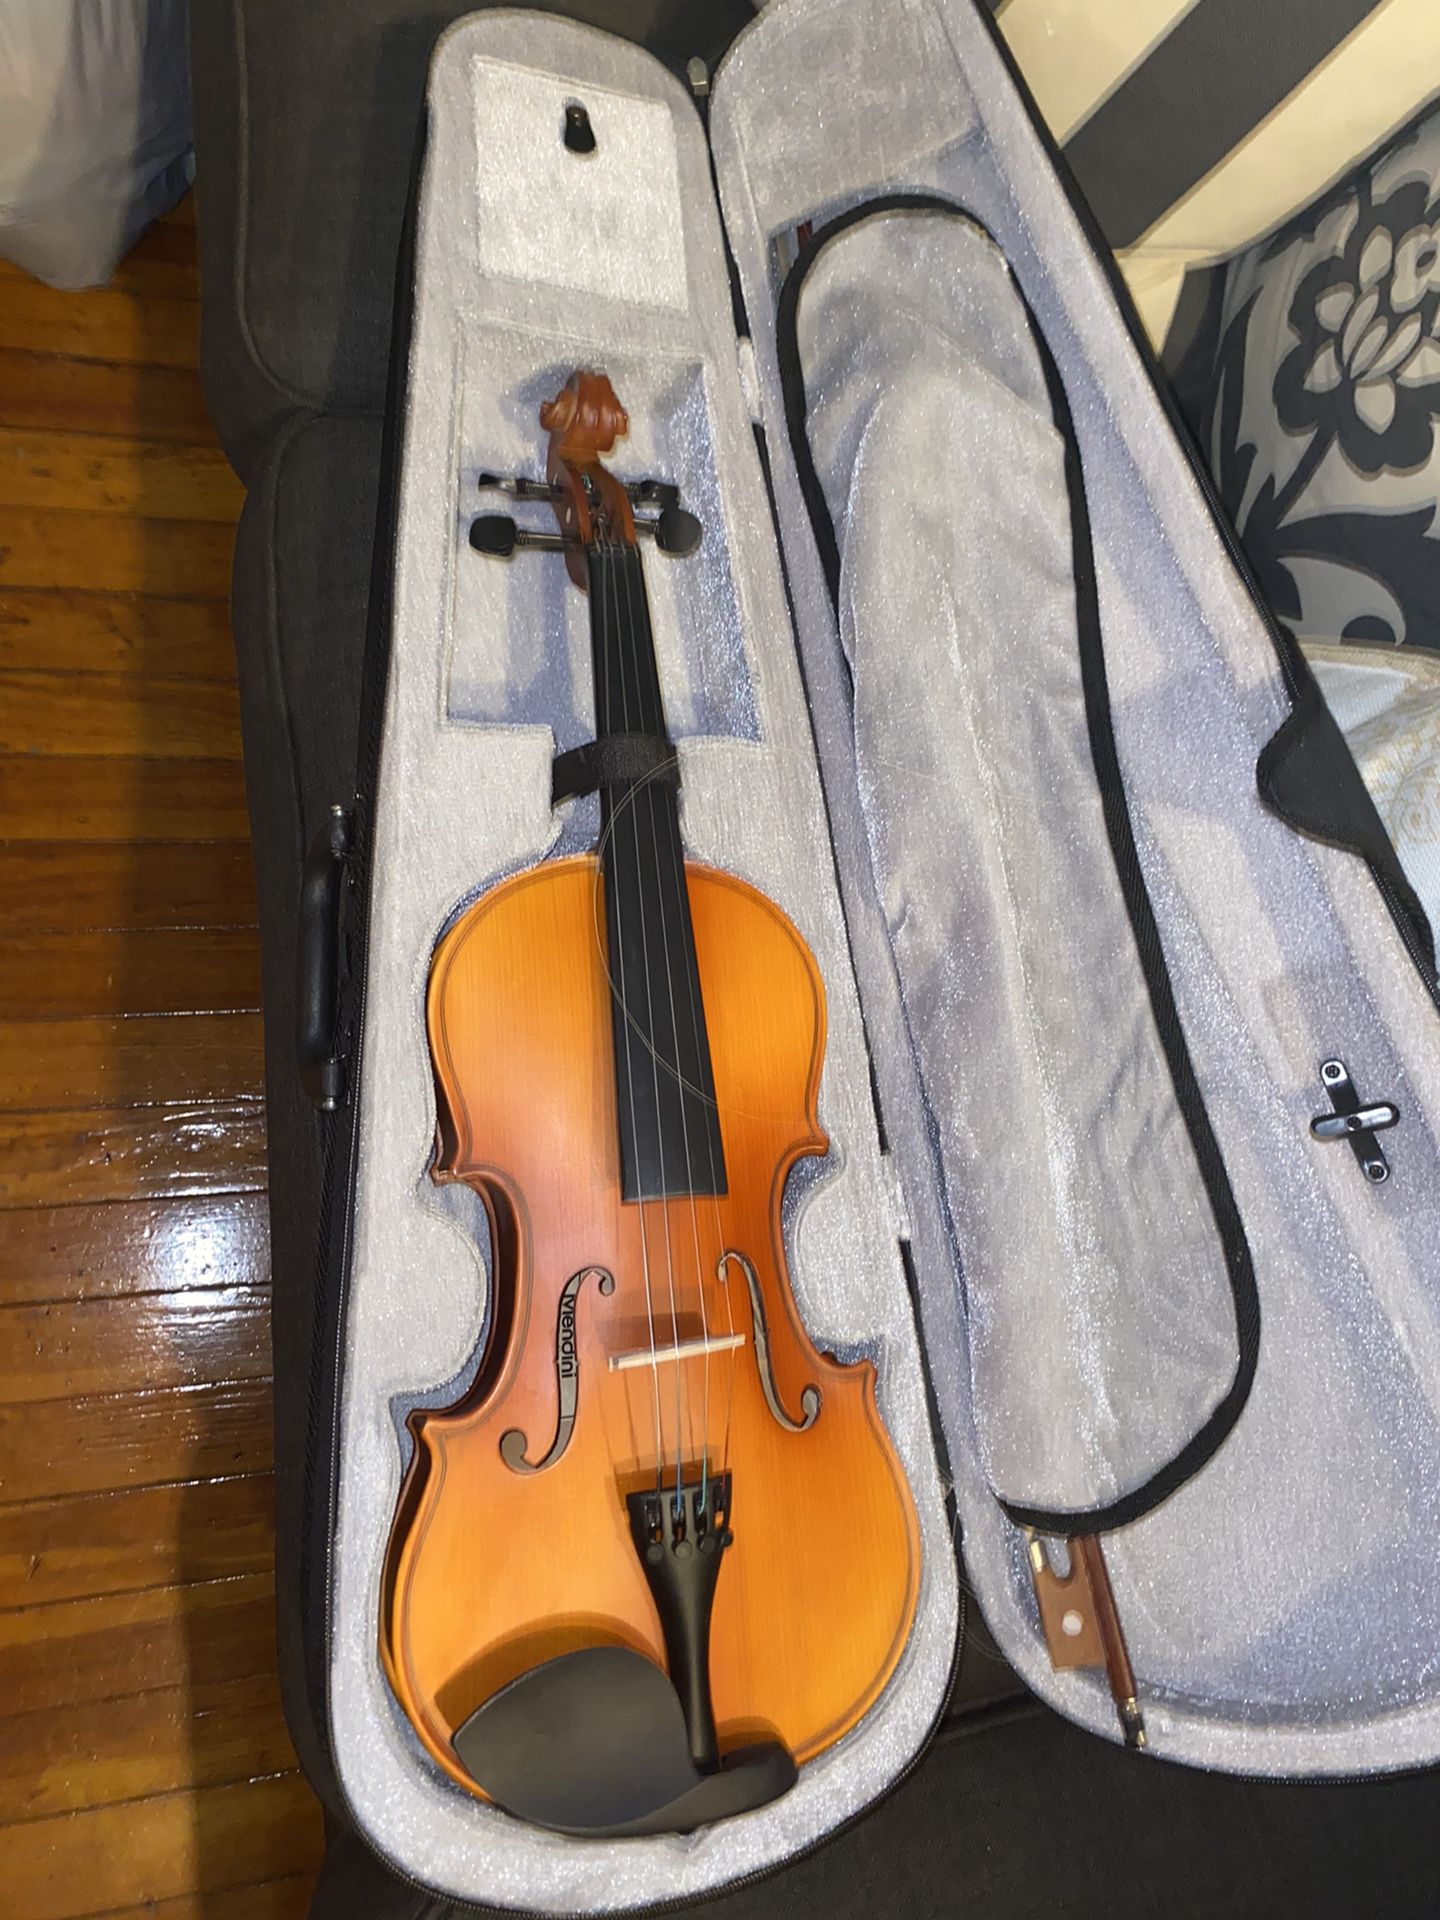 Vintage Violin With Strings 